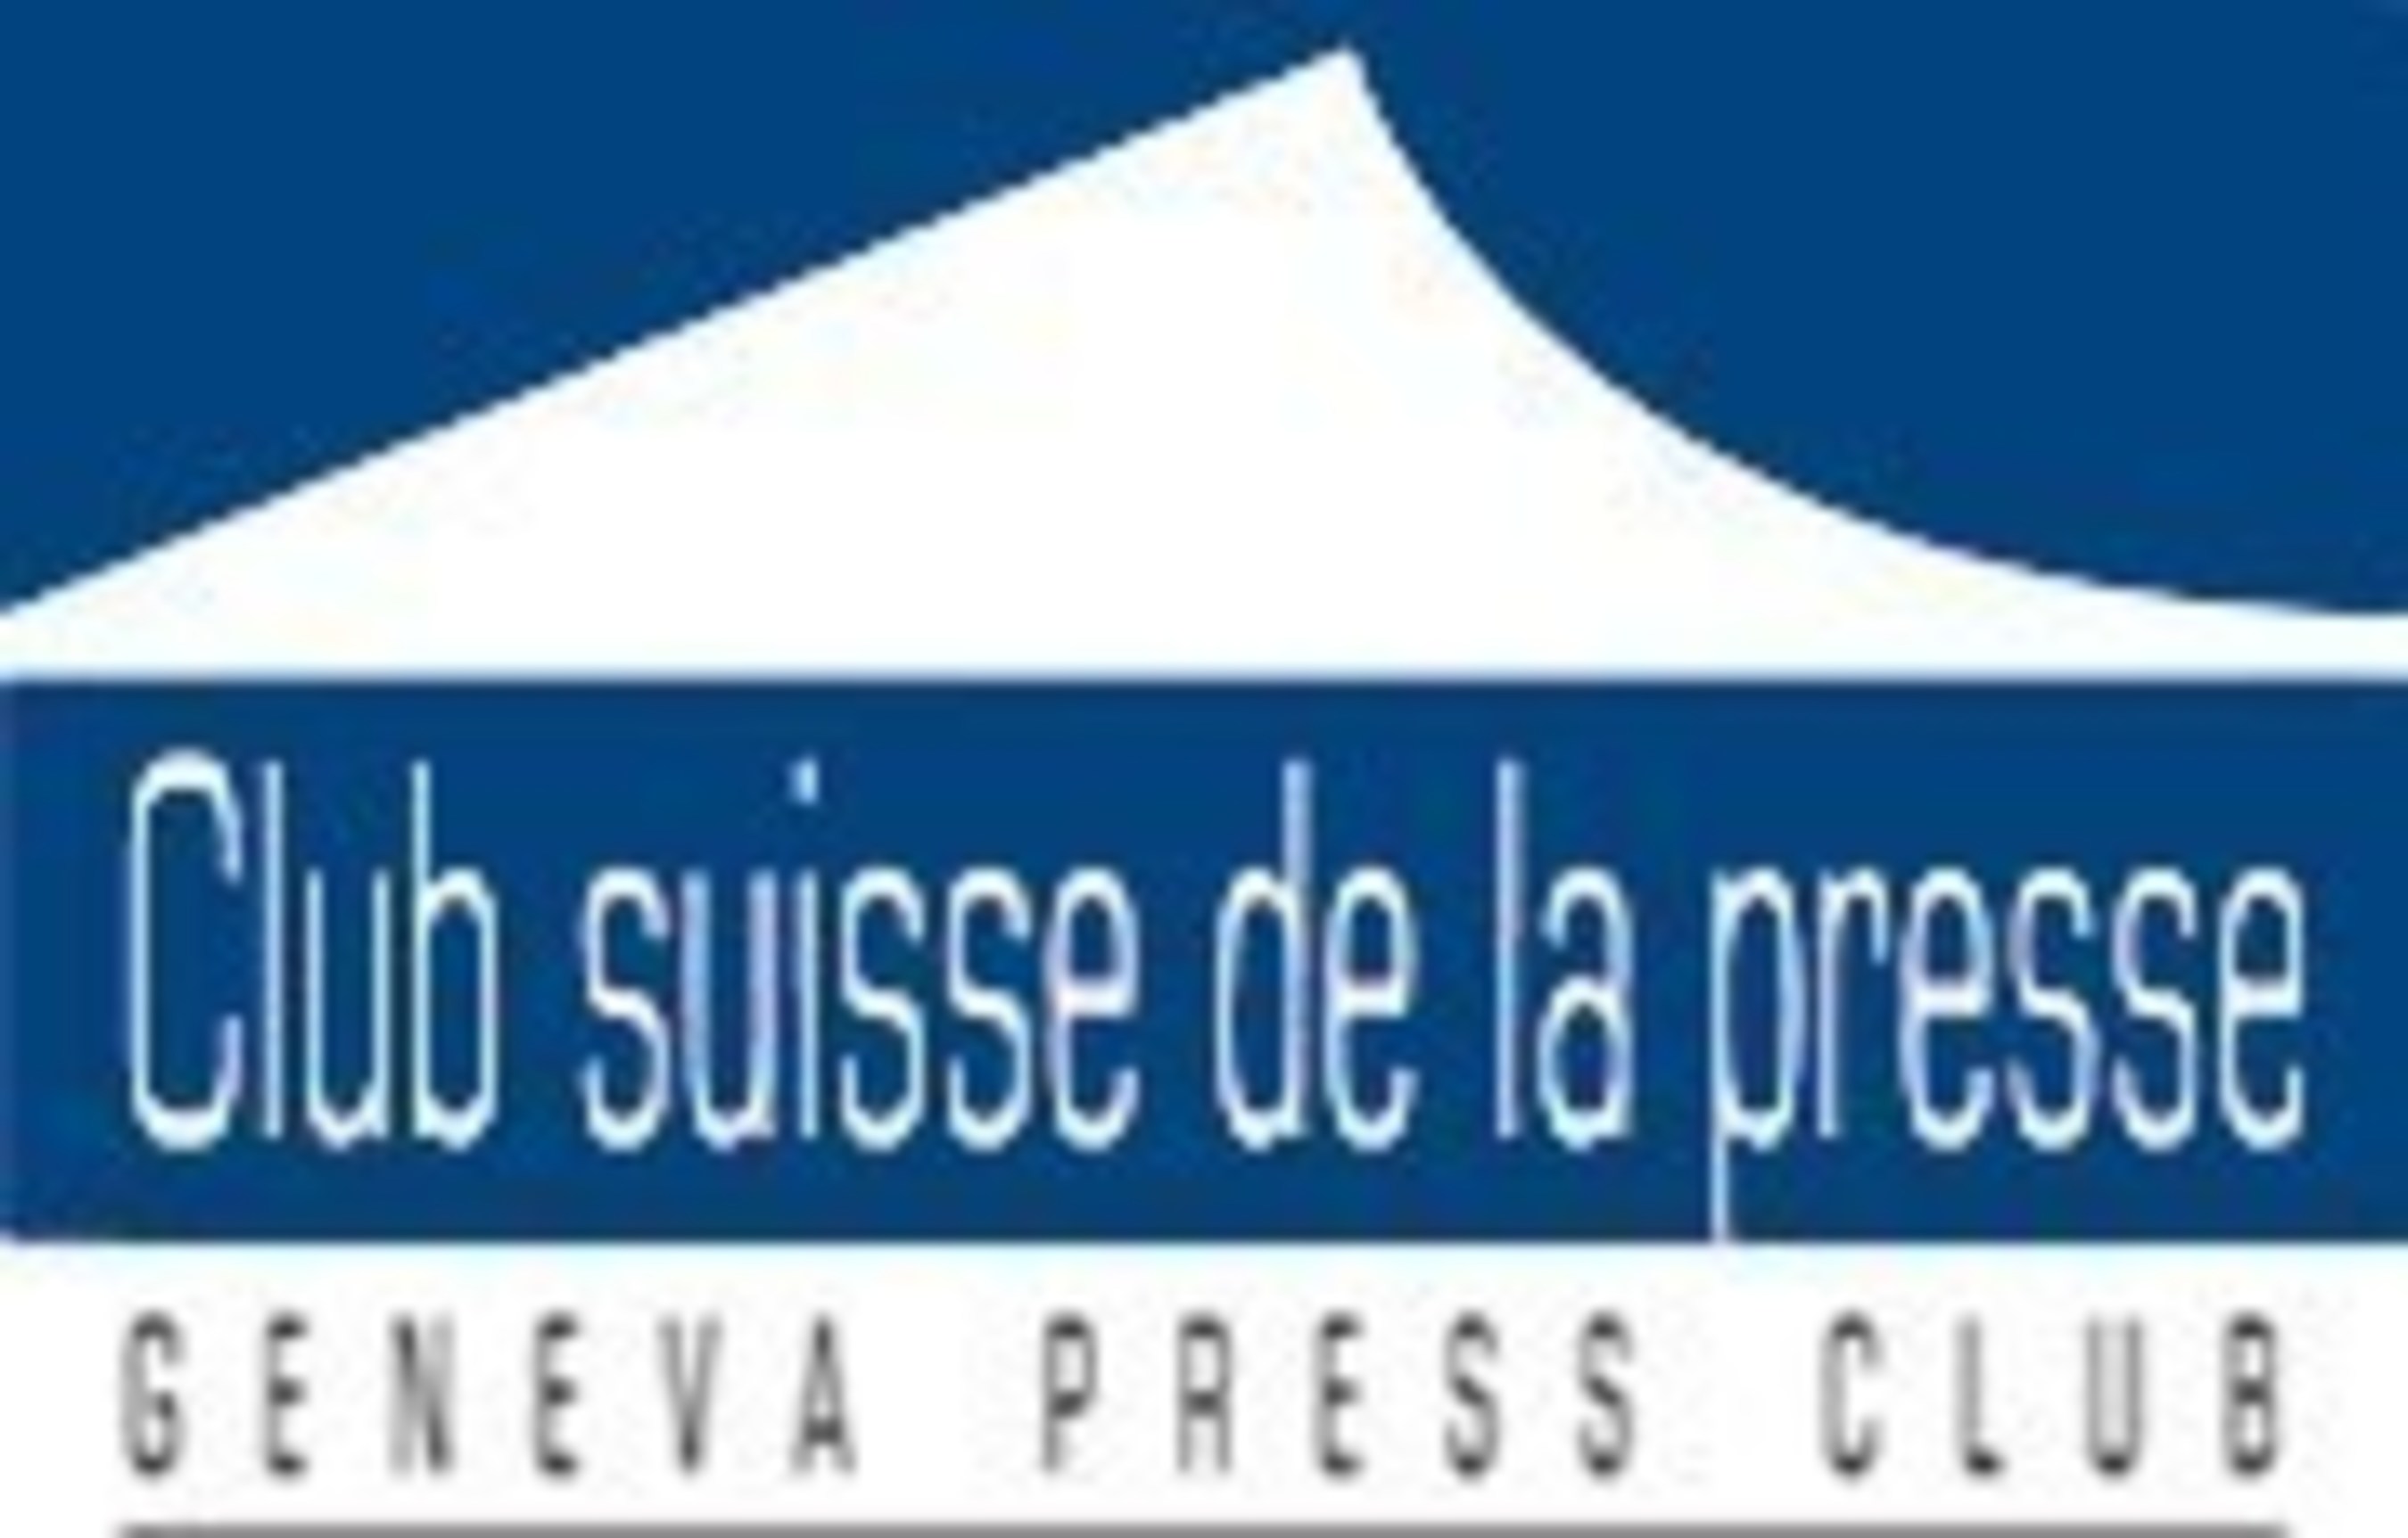 Club suisse de la presse